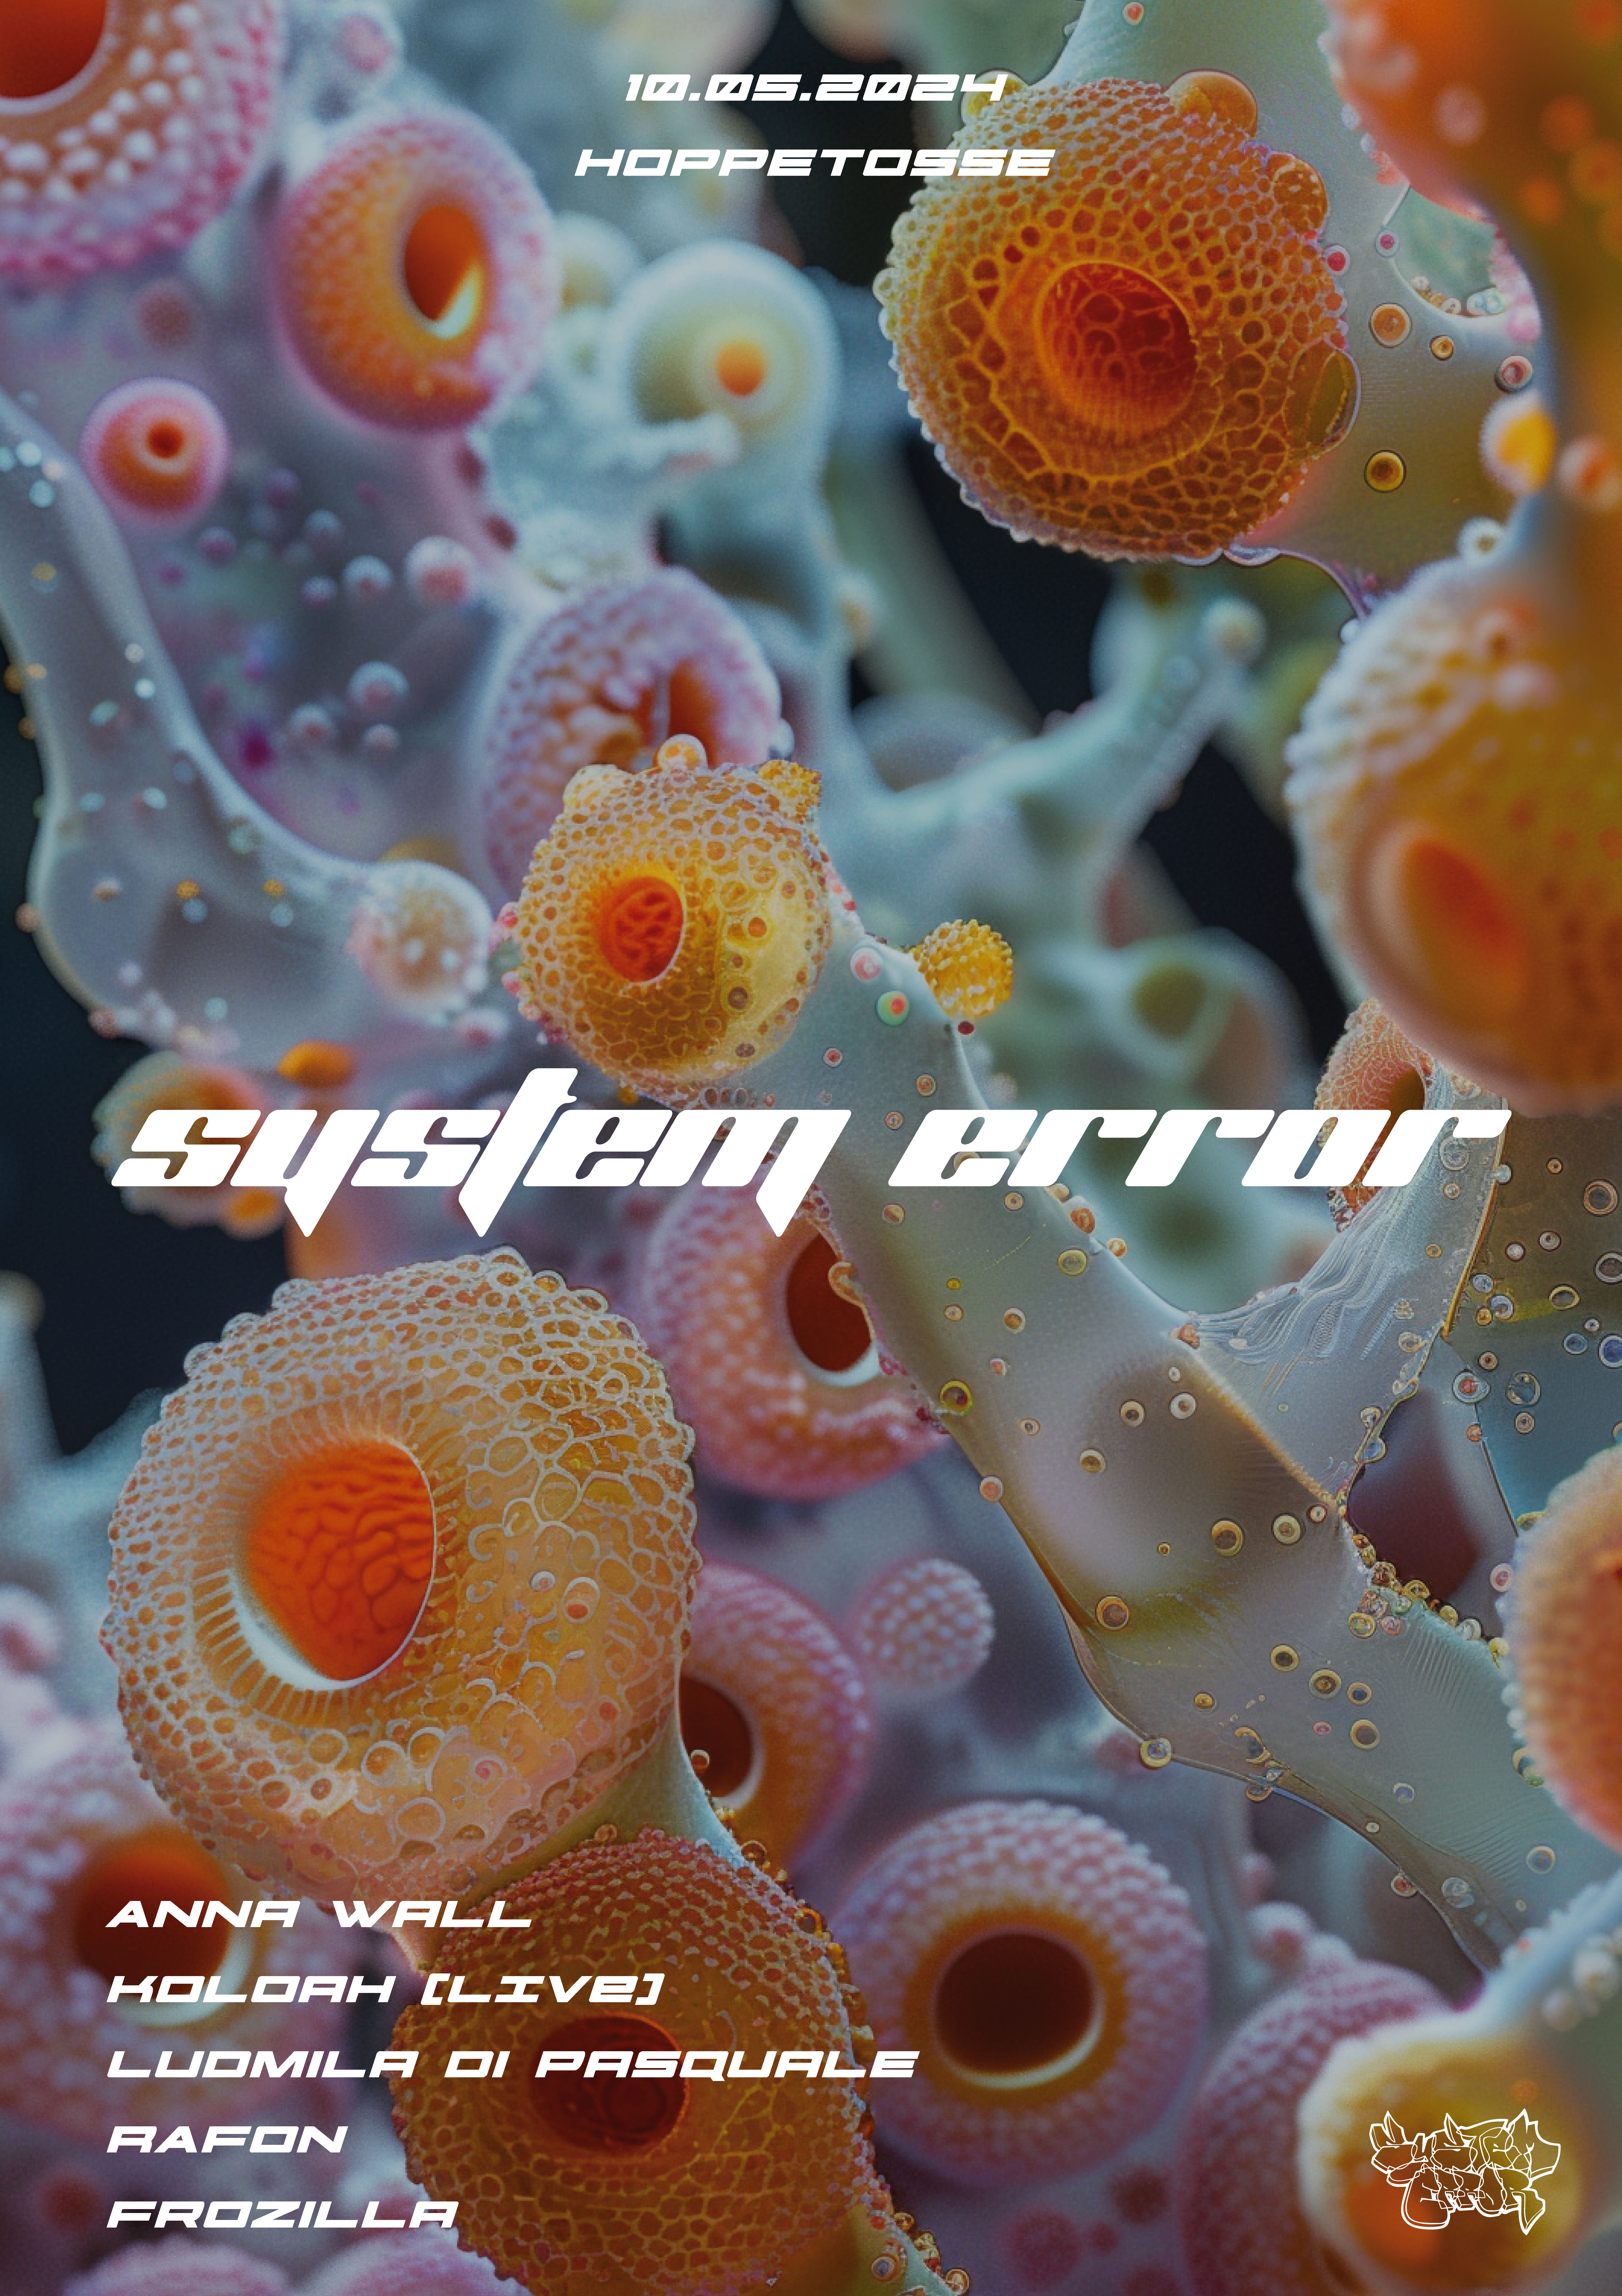 System Error - フライヤー表